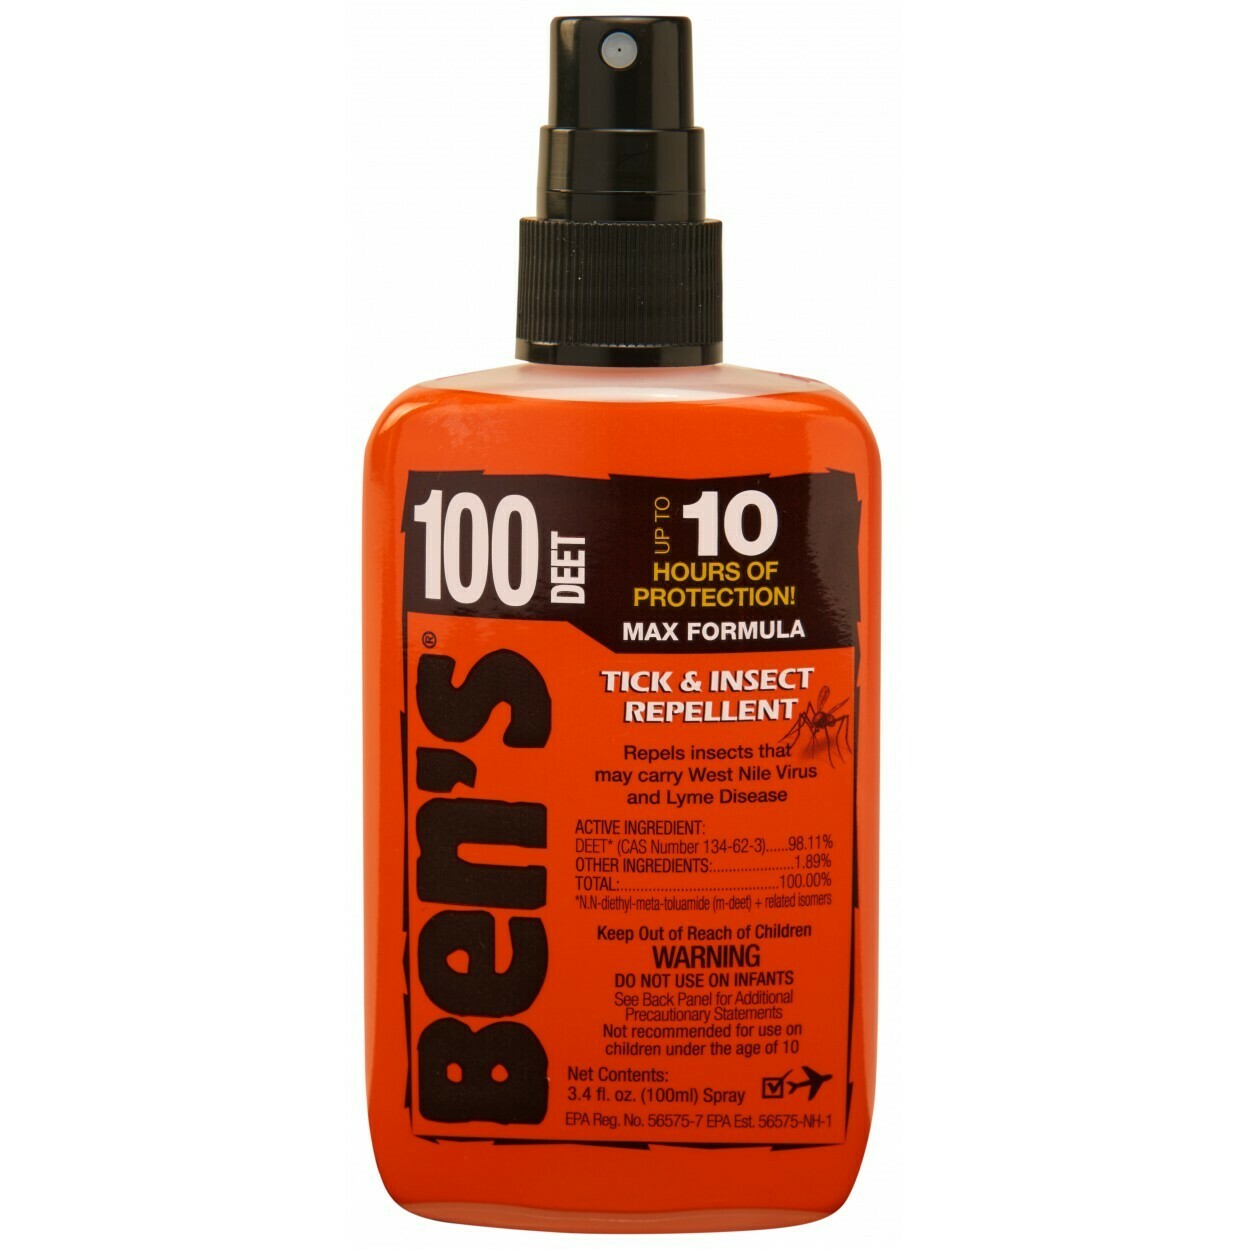 Bens Max Formula 100 Tick & Insect Repellant 3.4 oz Pump Spray 100% Deet